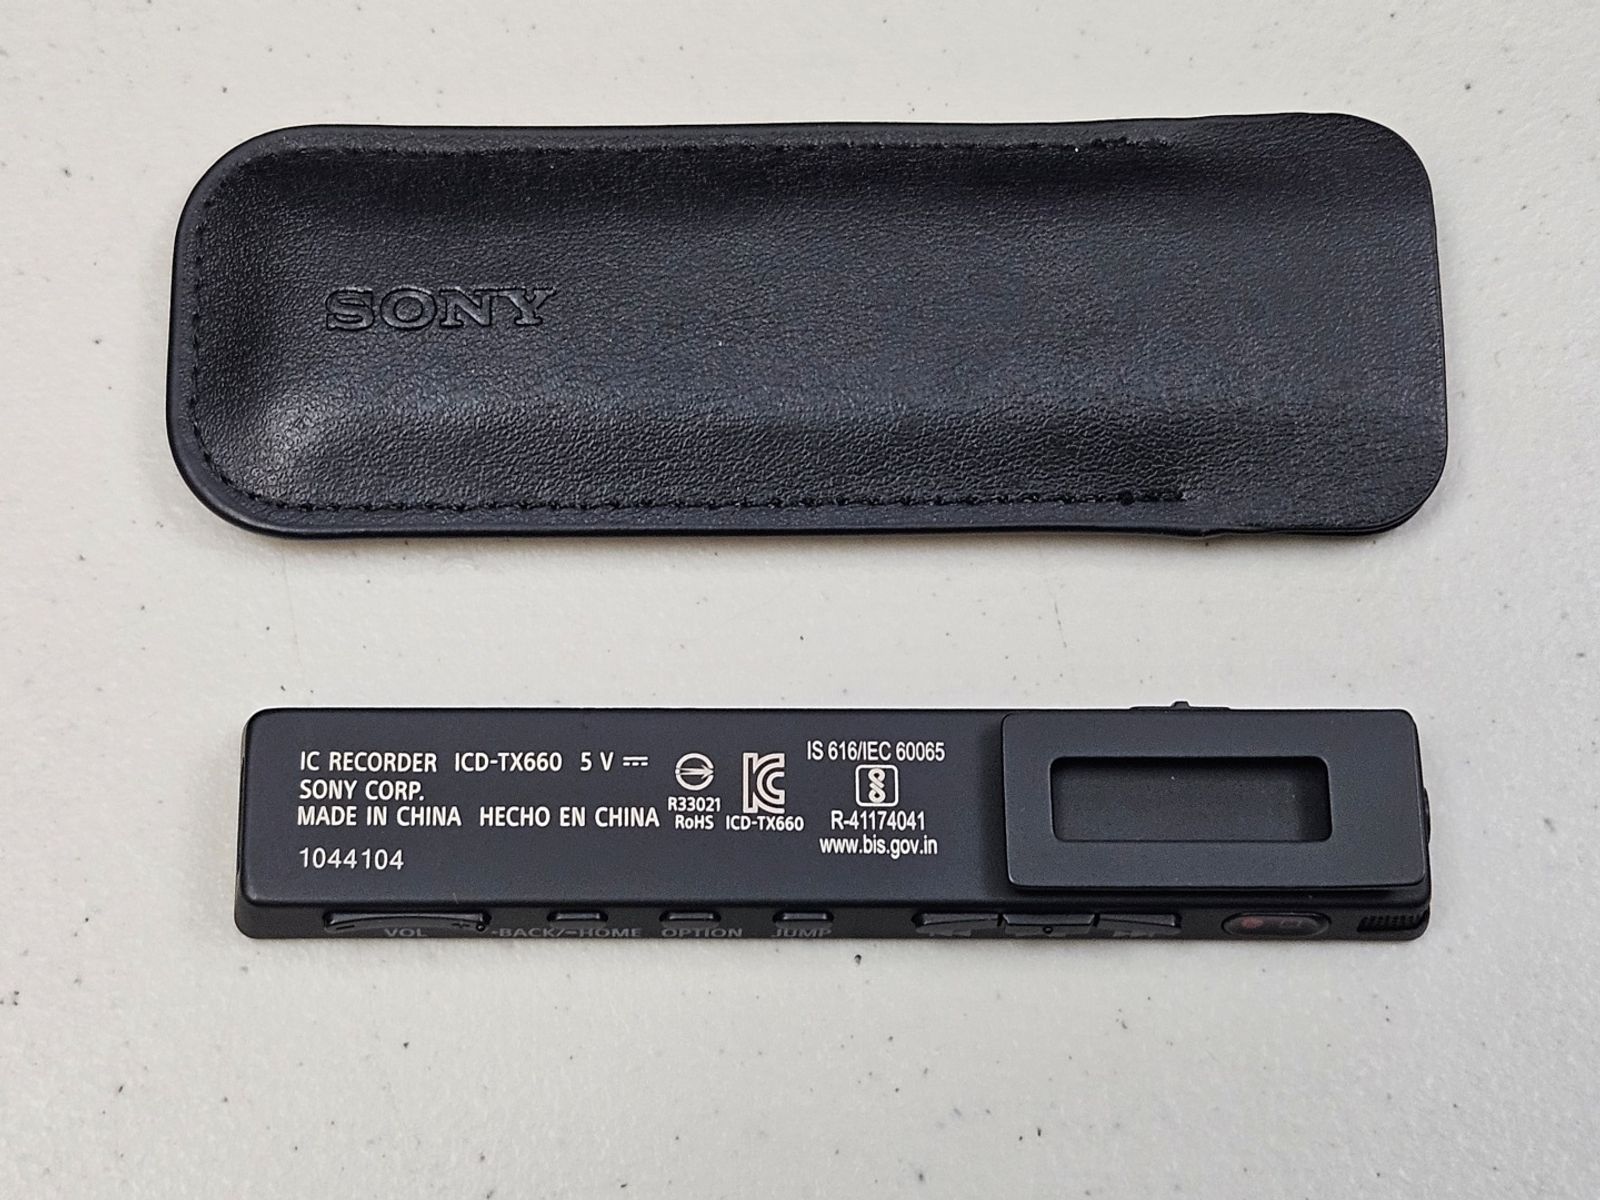 【お得在庫あ】新品 SONY ICD-TX660 ICレコーダー